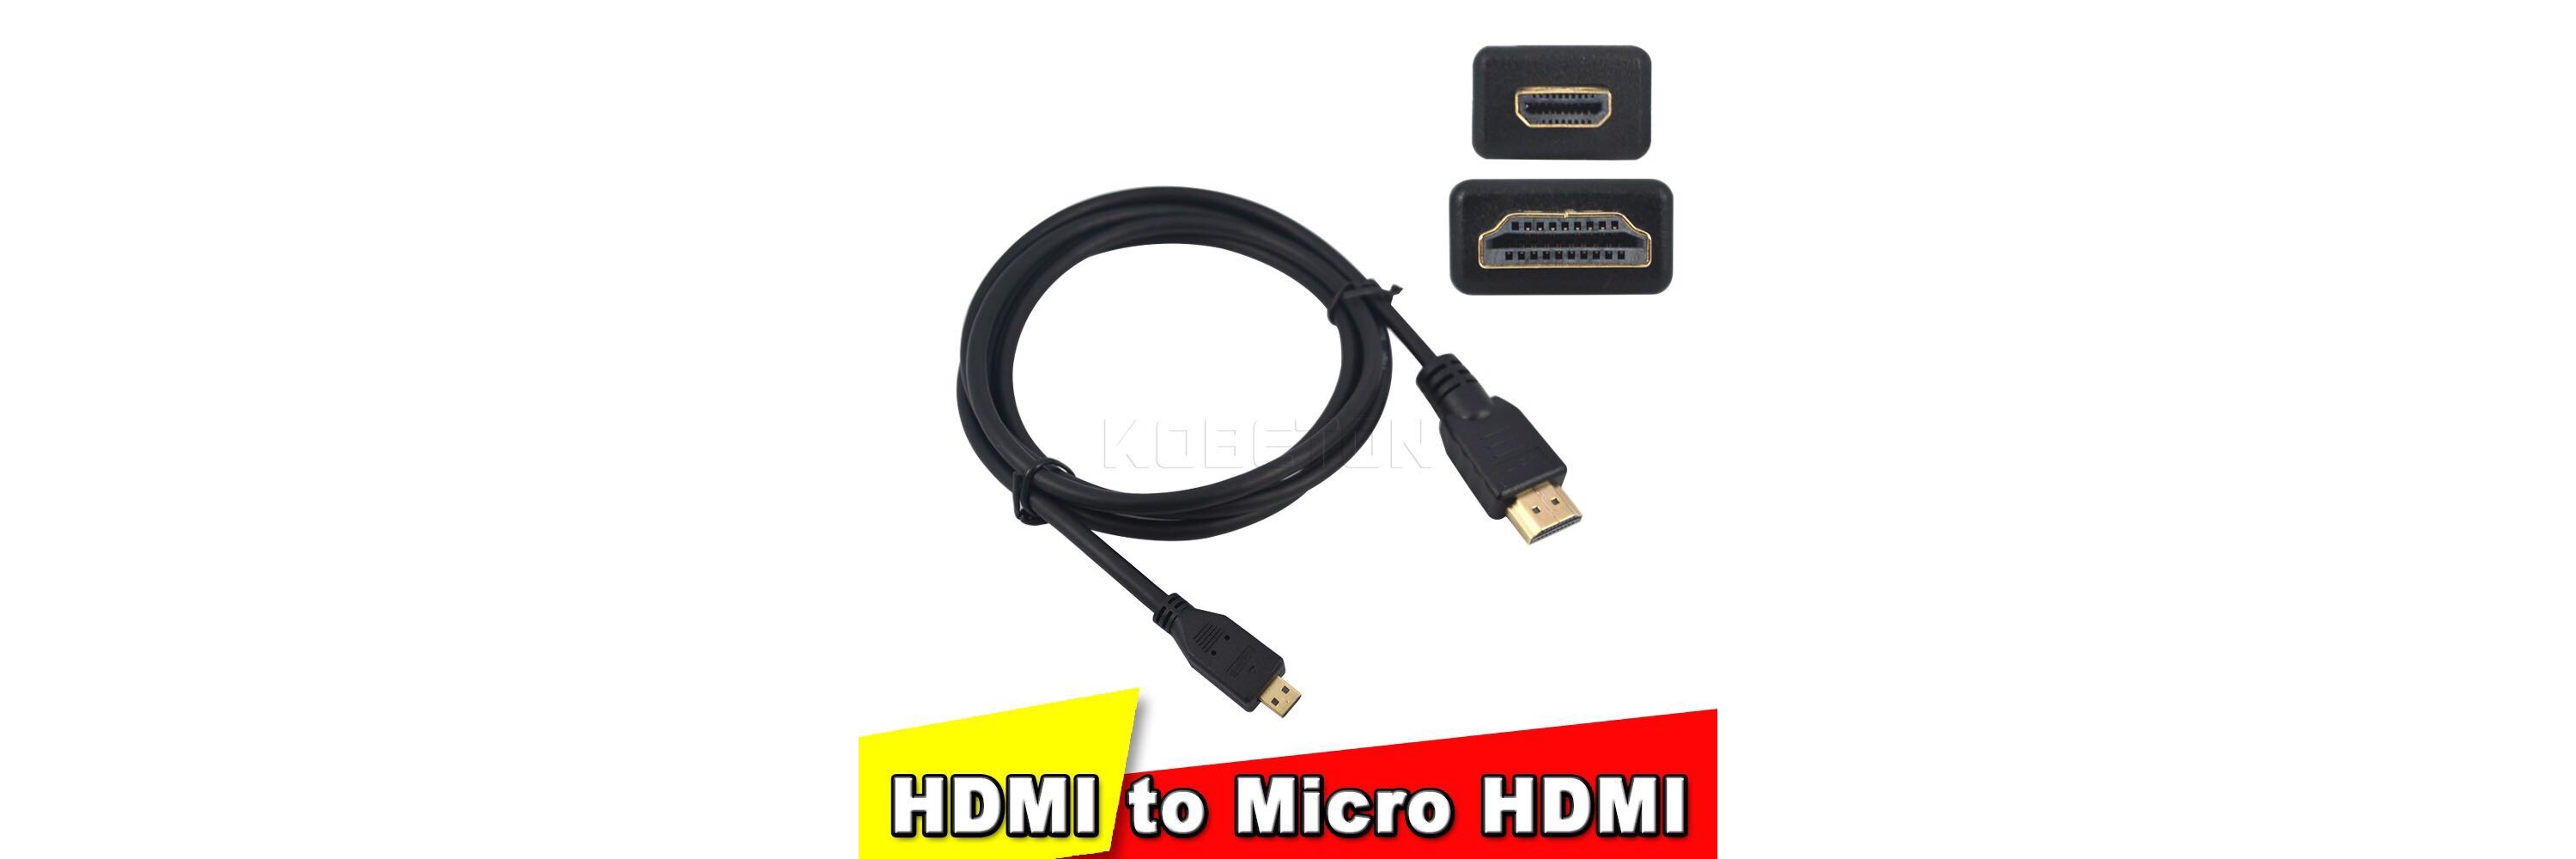 CORD HD HDMI/MICRO-HDMI 2M